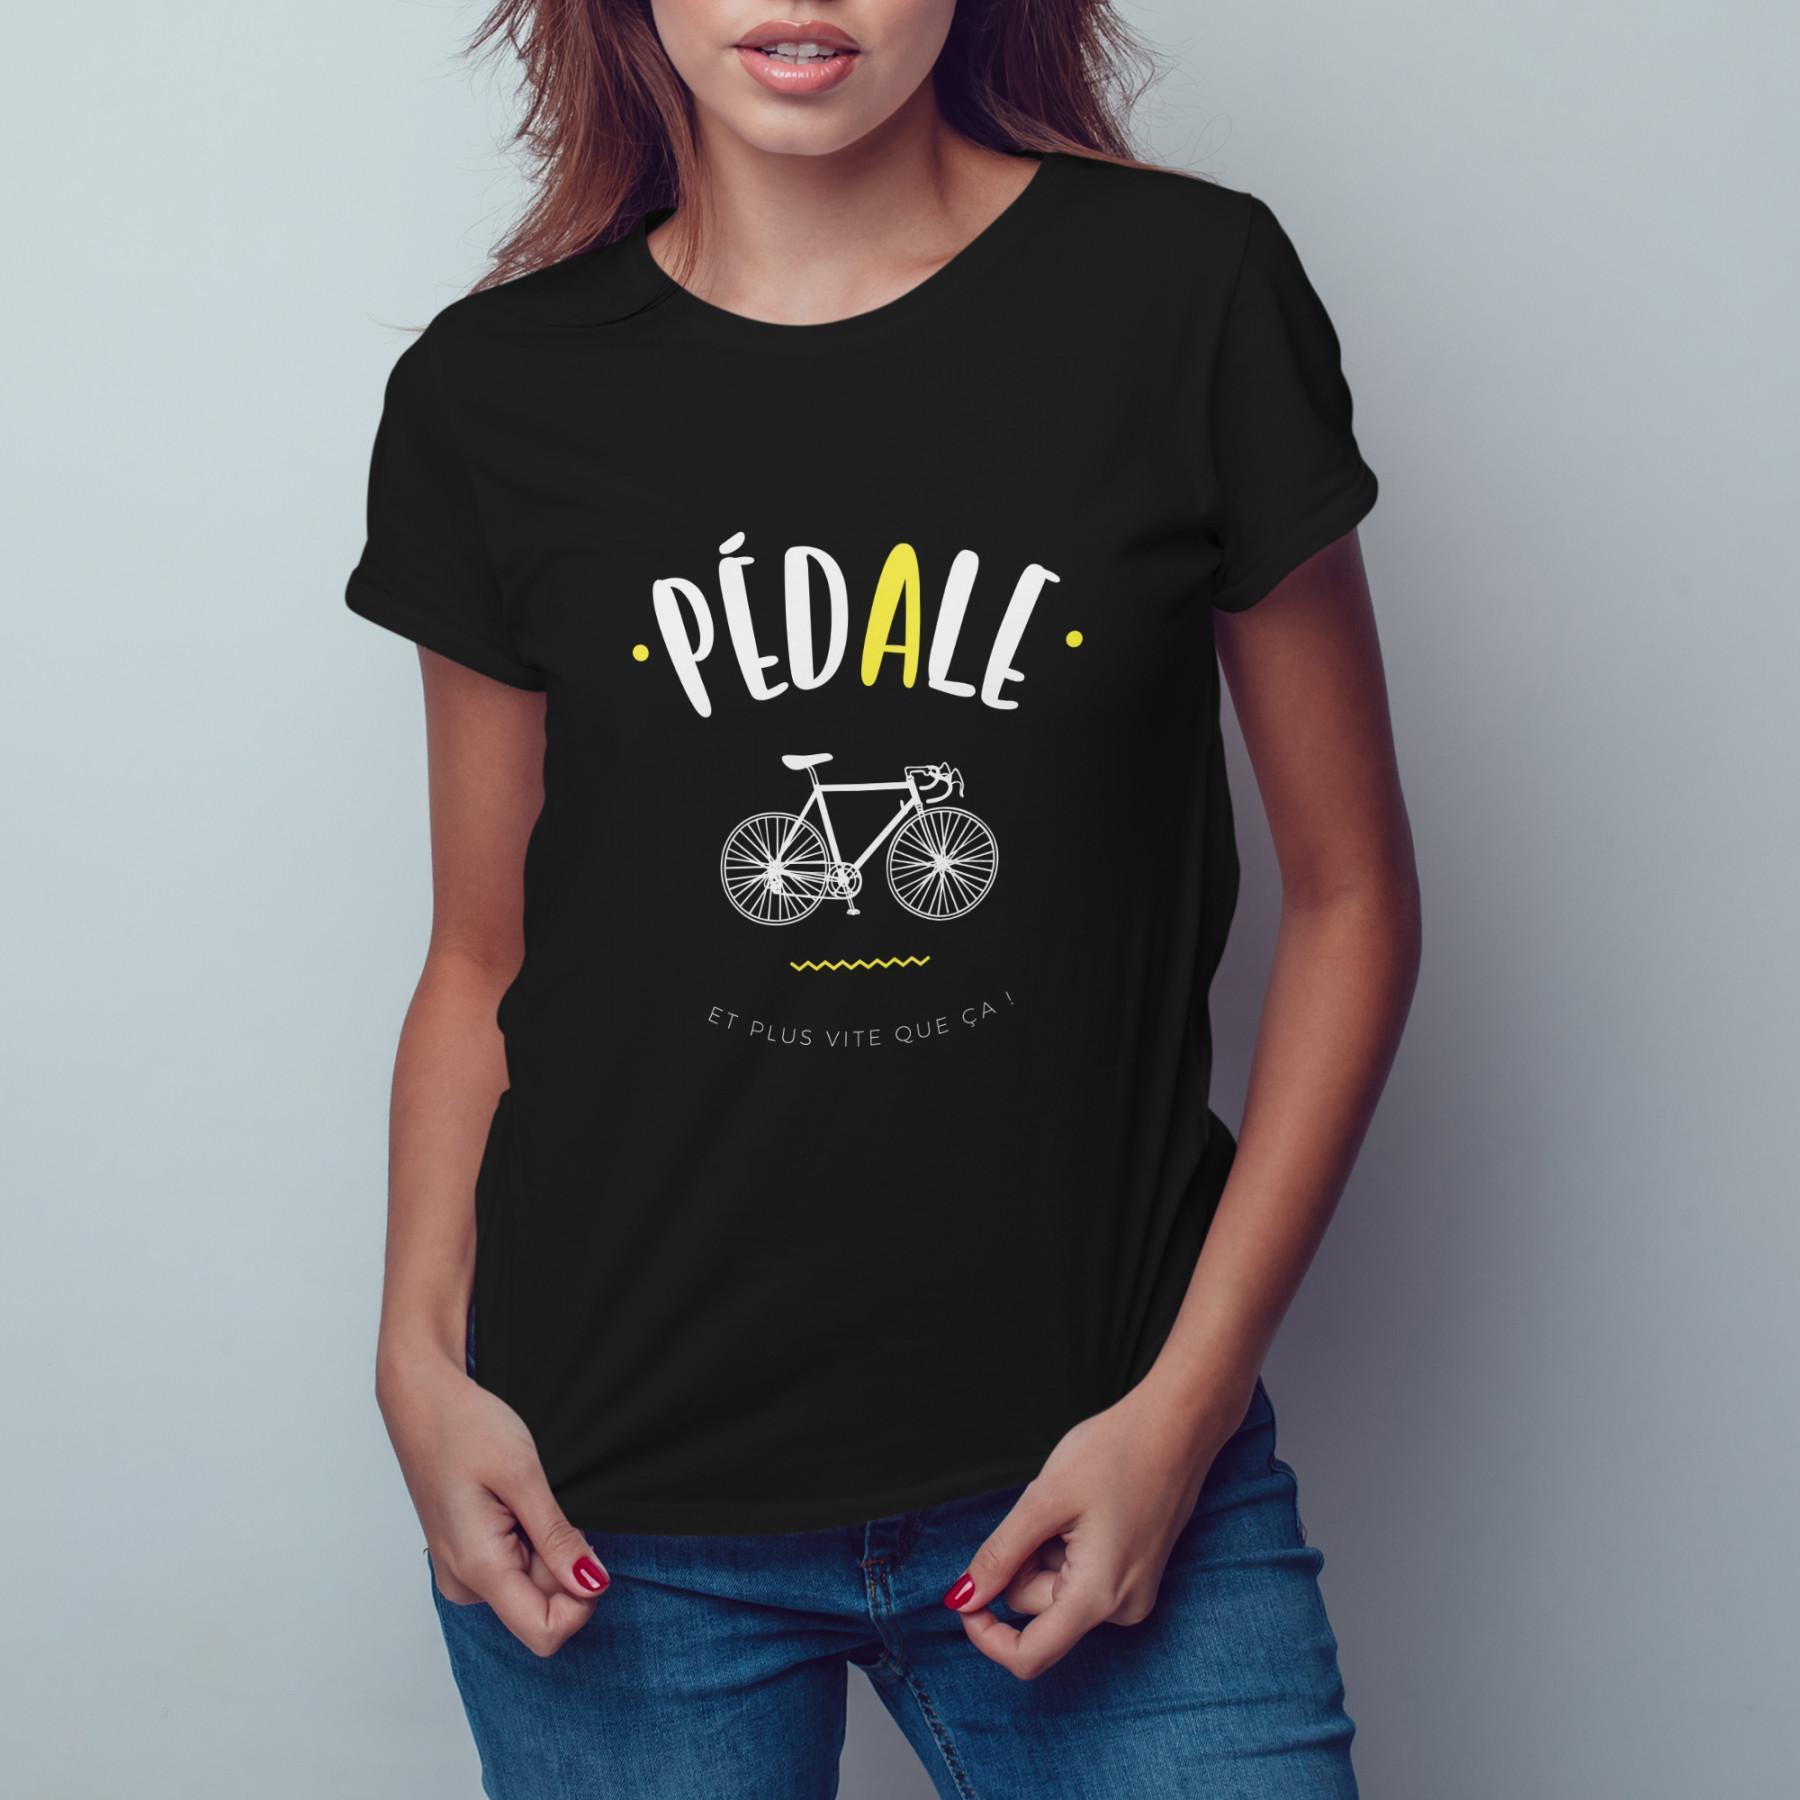 T-shirt Frau Pedal